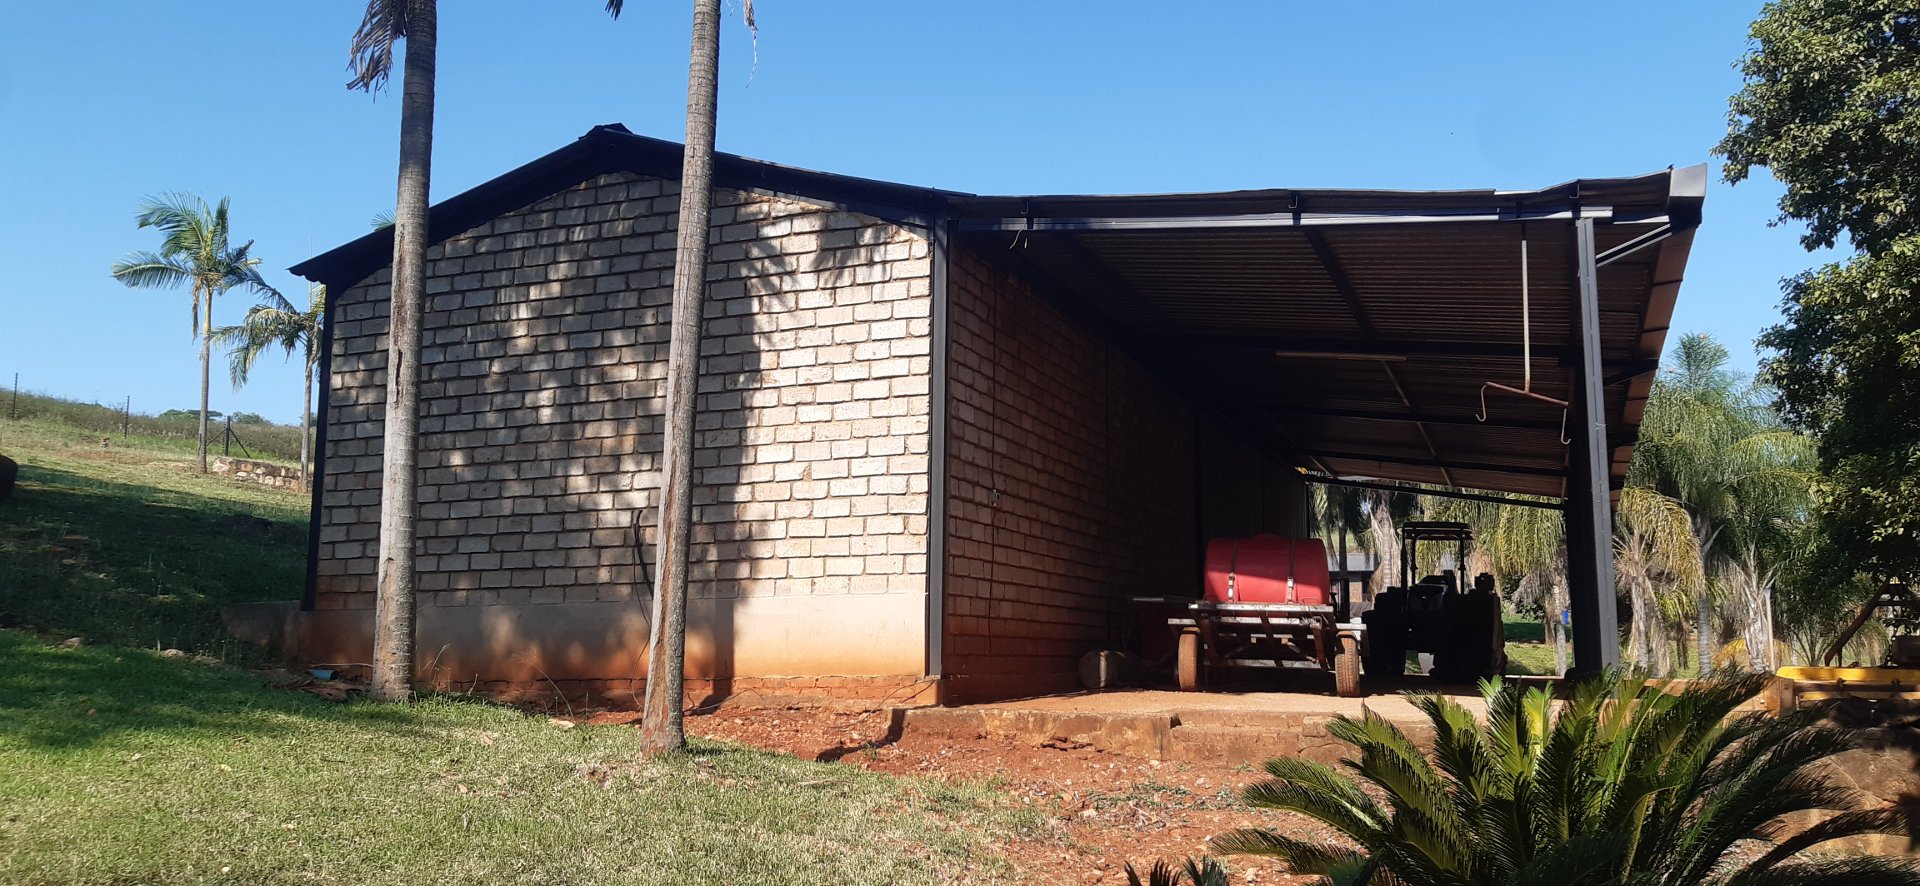  Bedroom Property for Sale in Tzaneen Rural Limpopo